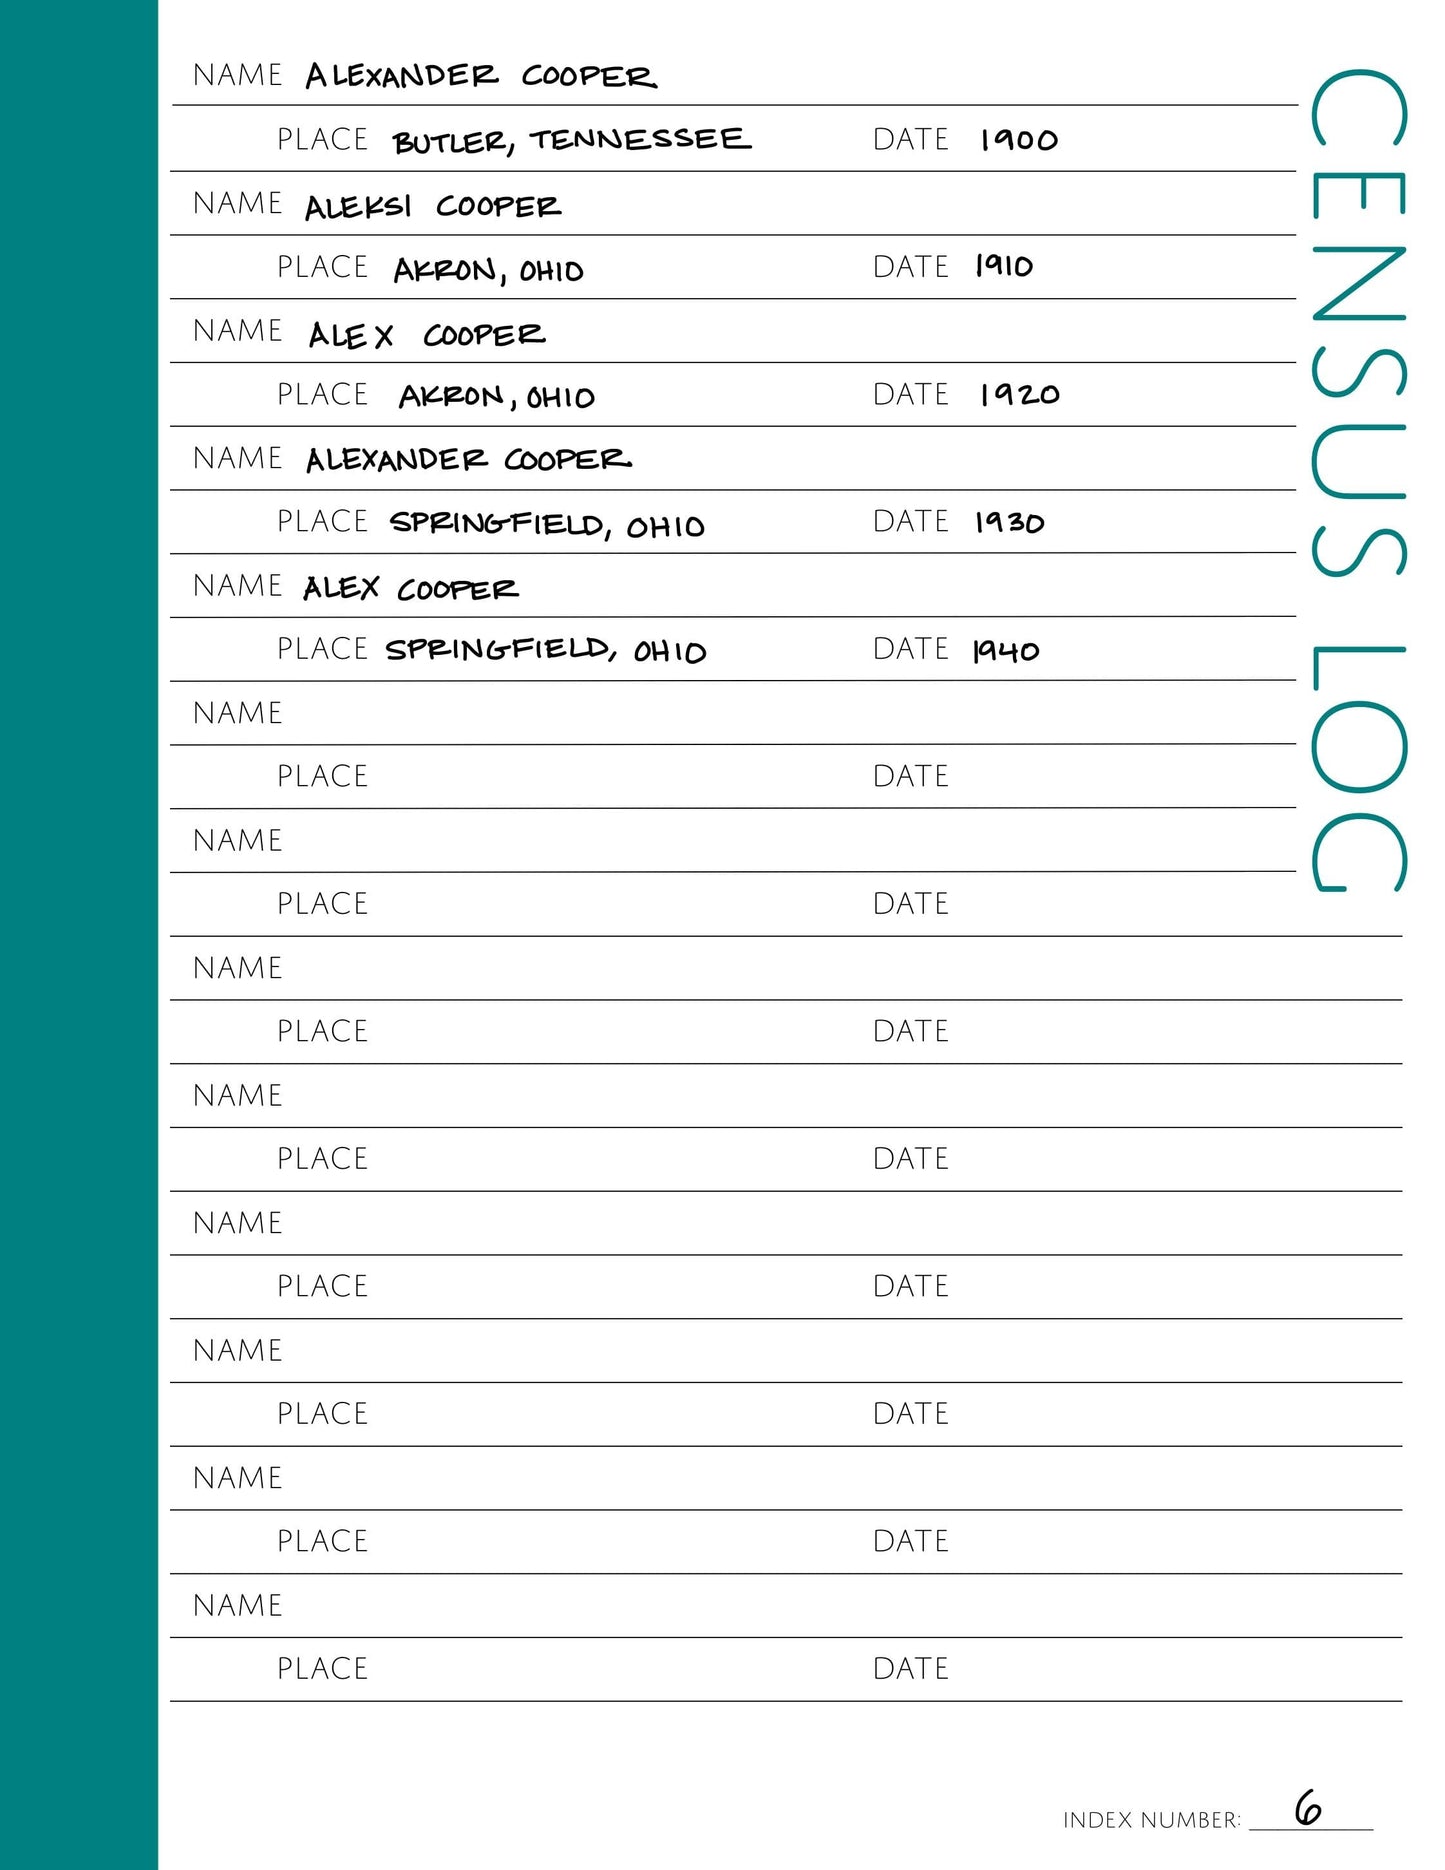 Census Log: Printable Genealogy Form (Digital Download)